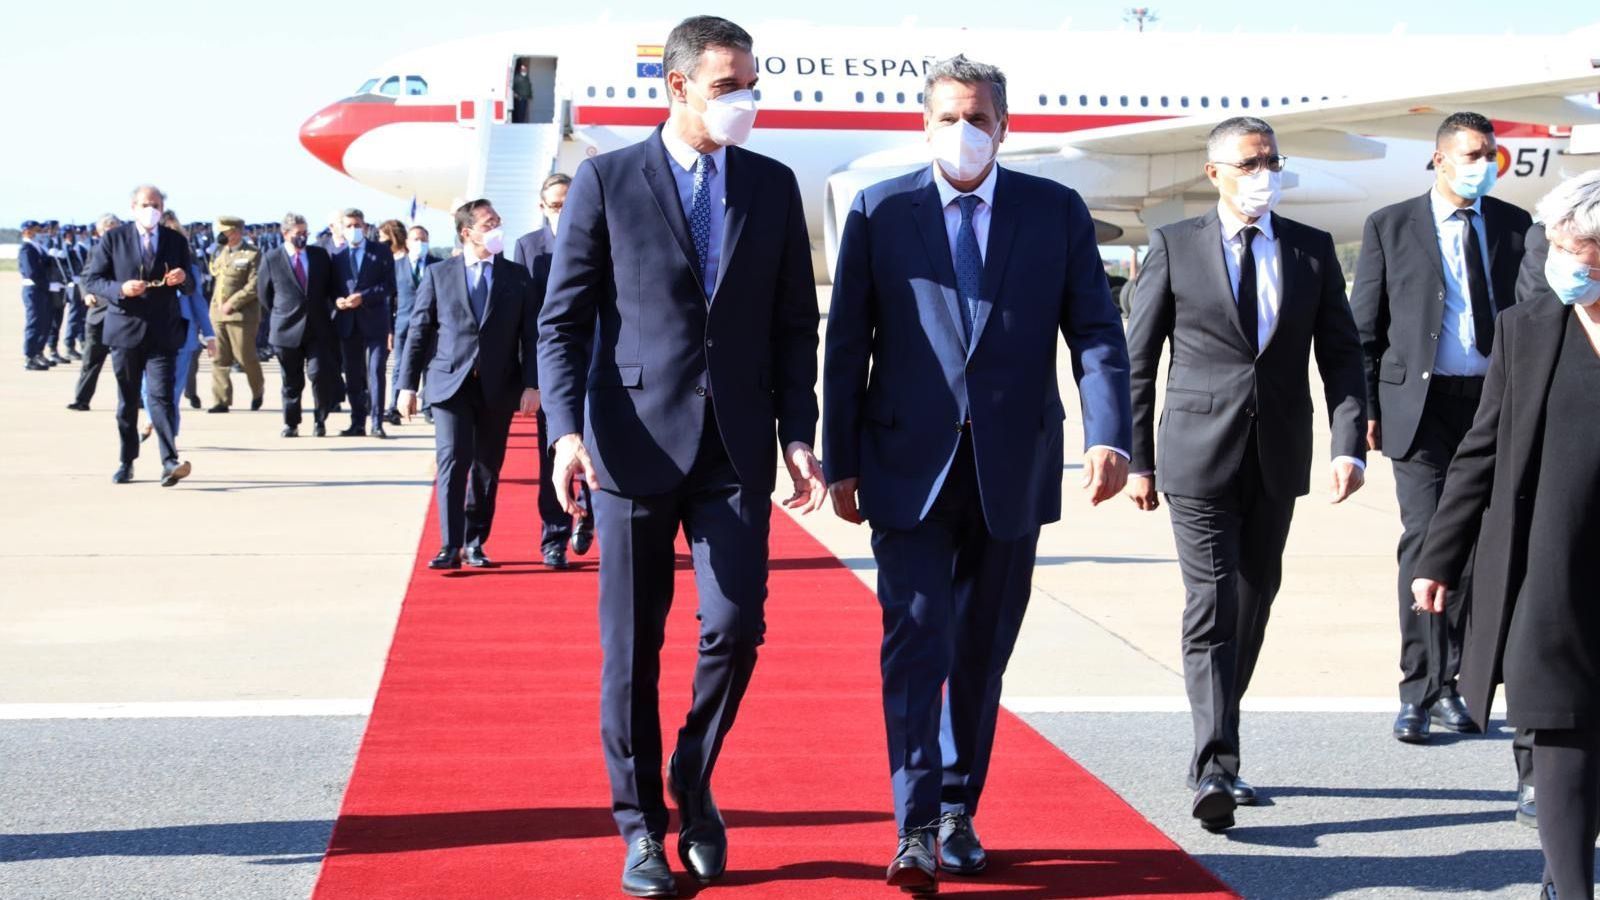 سانشيز يُحضر معه 12 وزيرا للمغرب وحوالي 20 اتفاقية في قمة الرباط